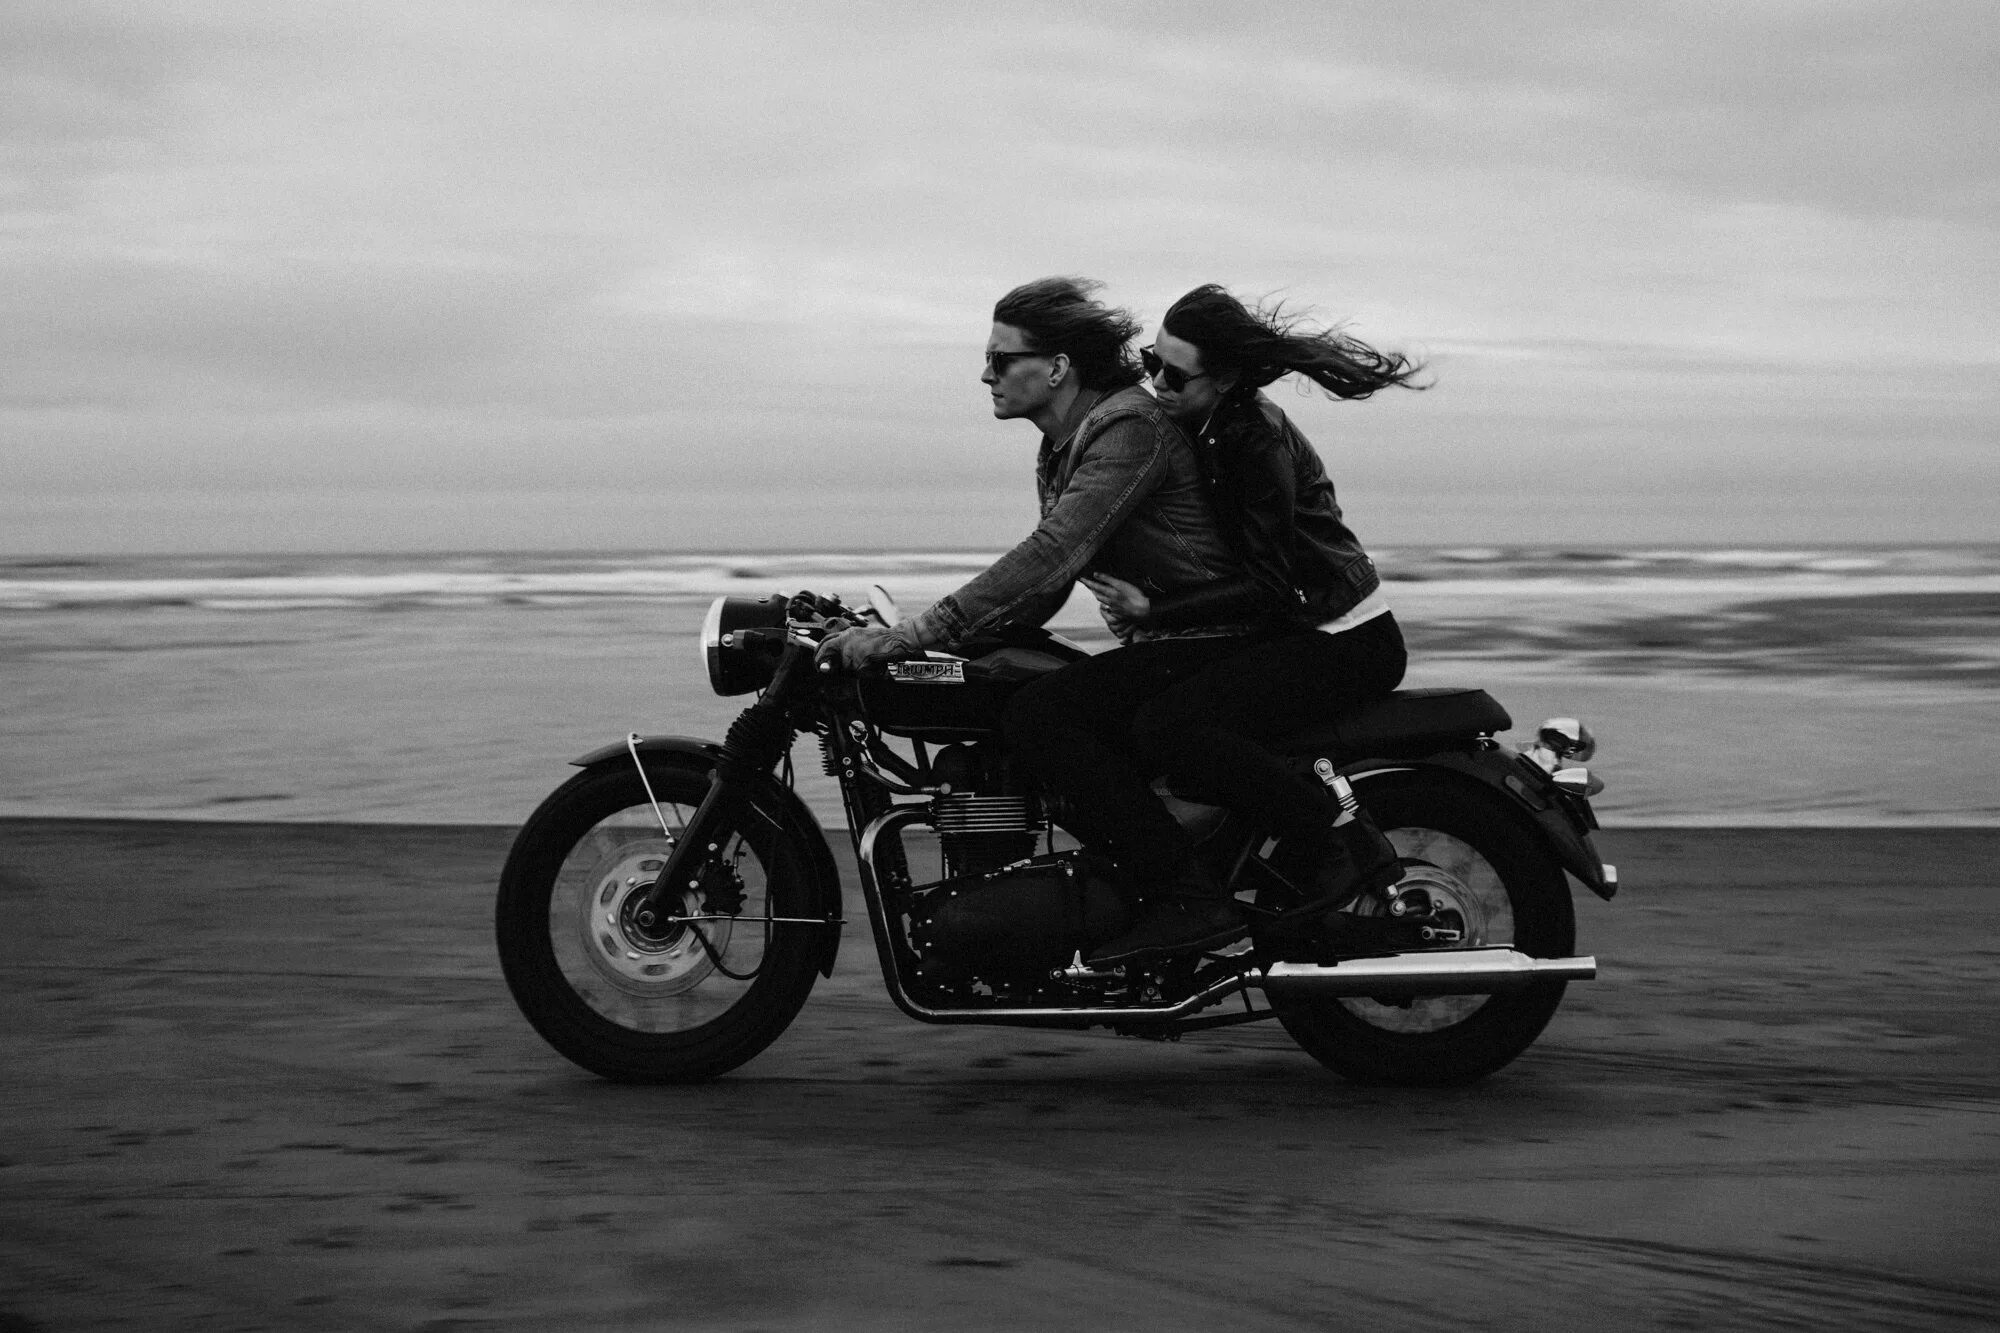 Пара на мотоцикле. Парень с девушкой на мотоцикле. Пара едет на мотоцикле. Девушка едет на мотоцикле.